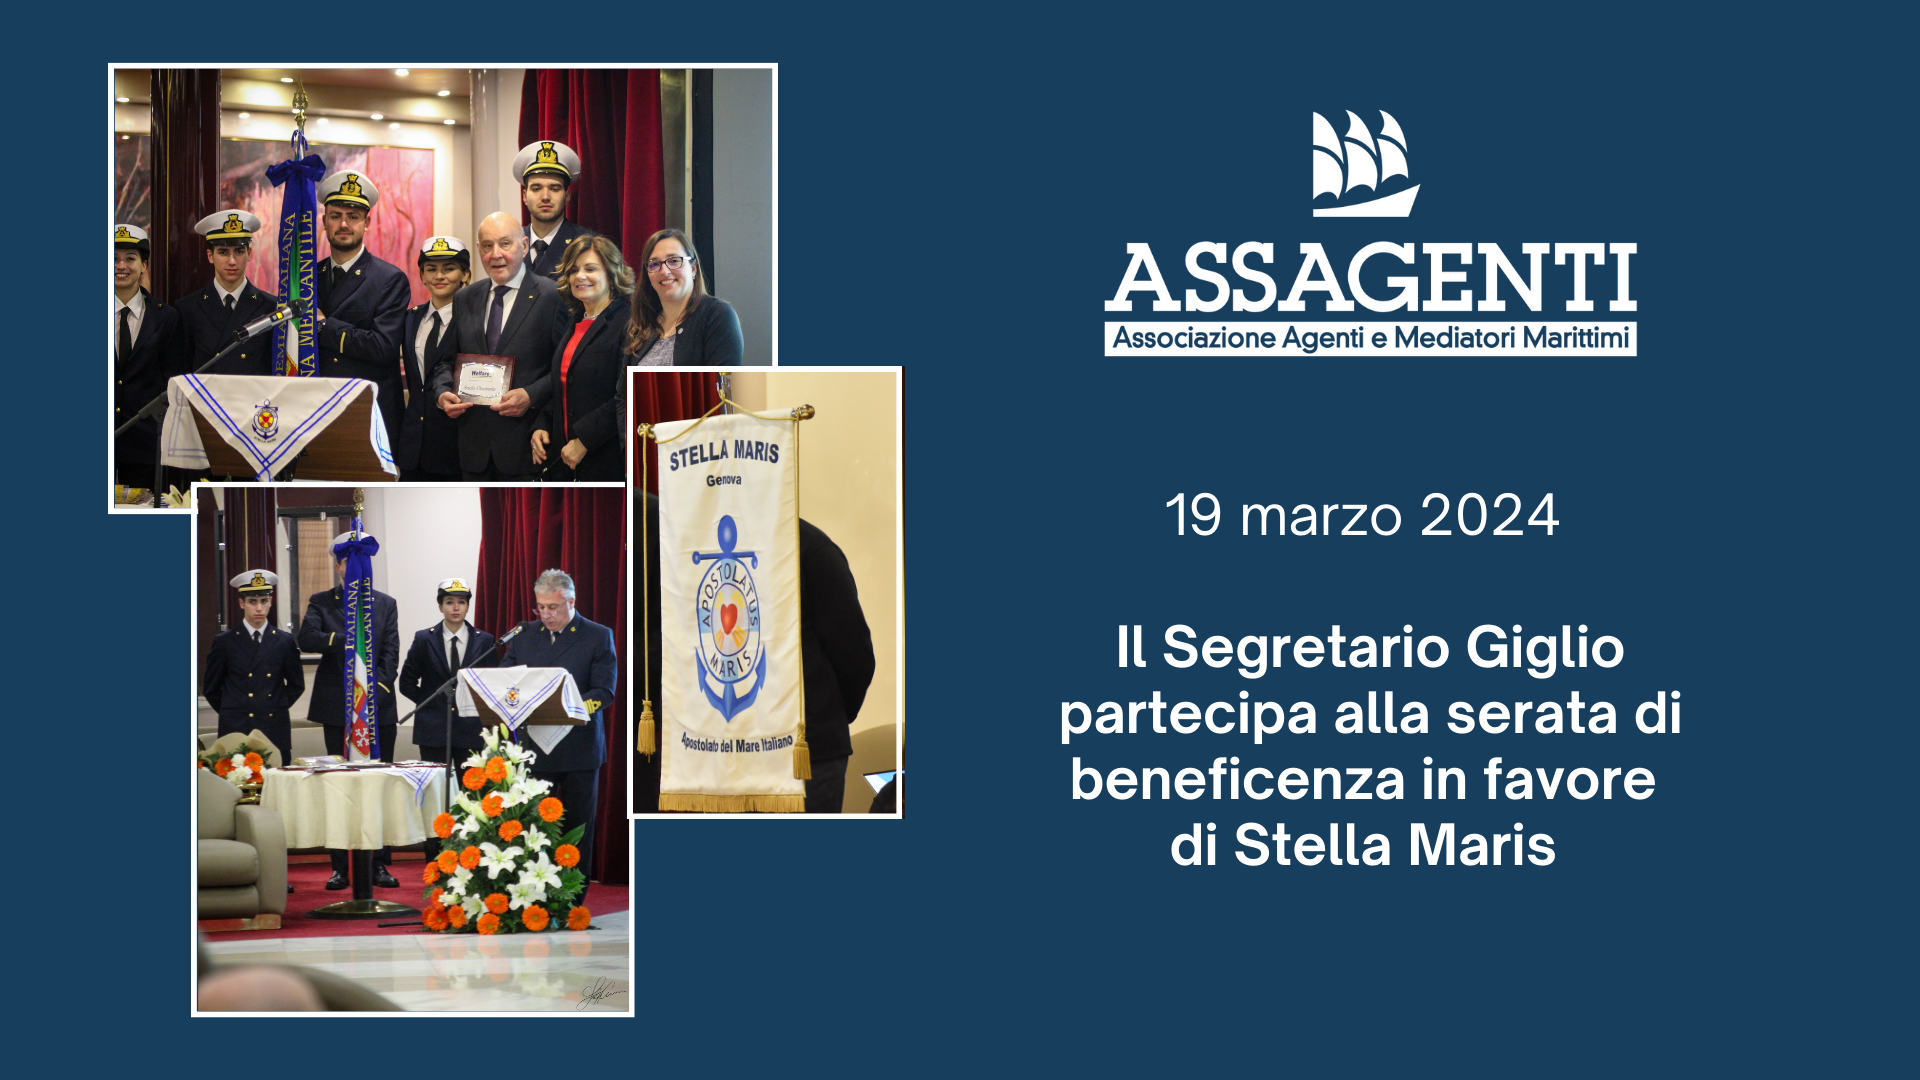 19 marzo 2024 - il Segretario Giglio partecipa alla serata in favore di Stella Maris